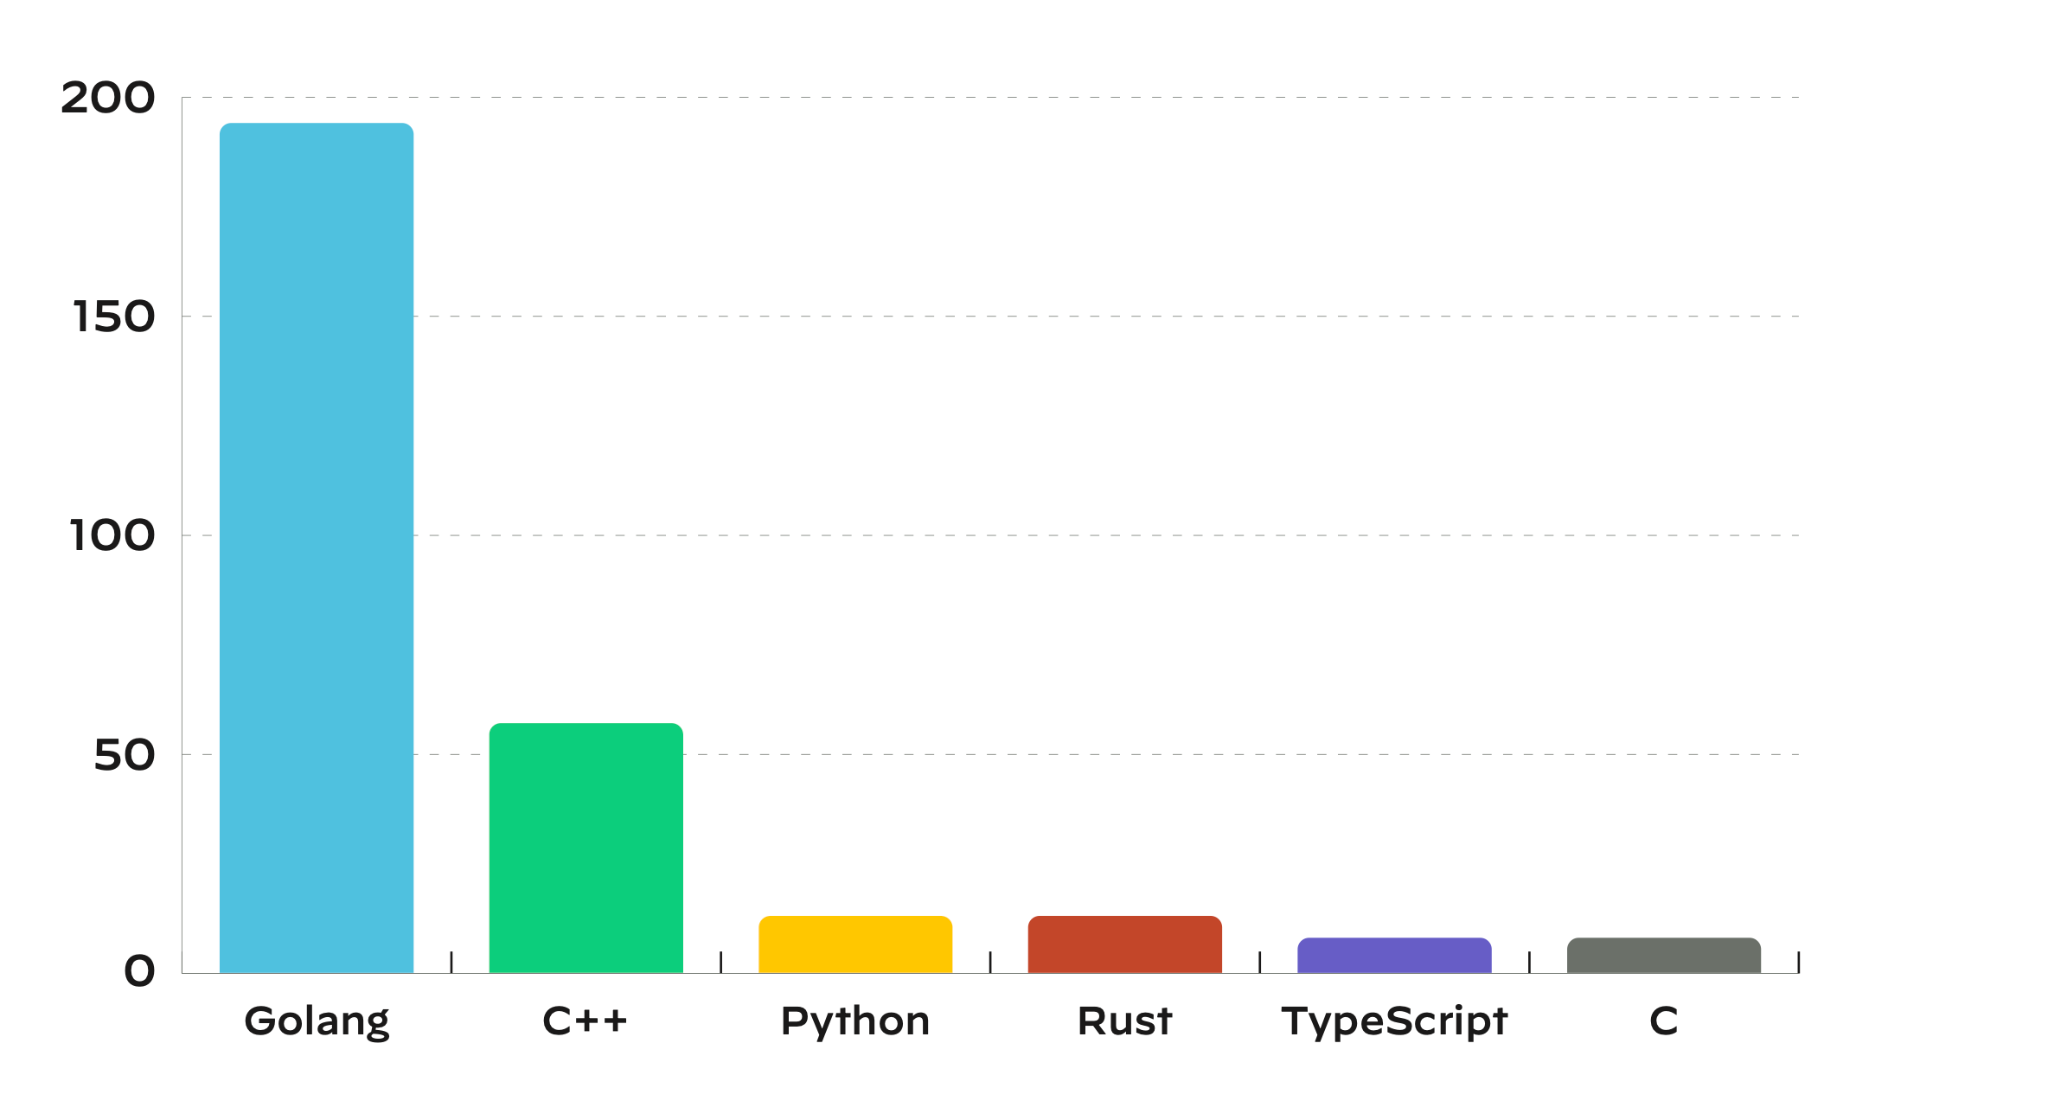 CNCFプロジェクトの脆弱性数を言語別に分類したグラフです。Golangが過半数を占め、次いでC++、Pythonが続きます。